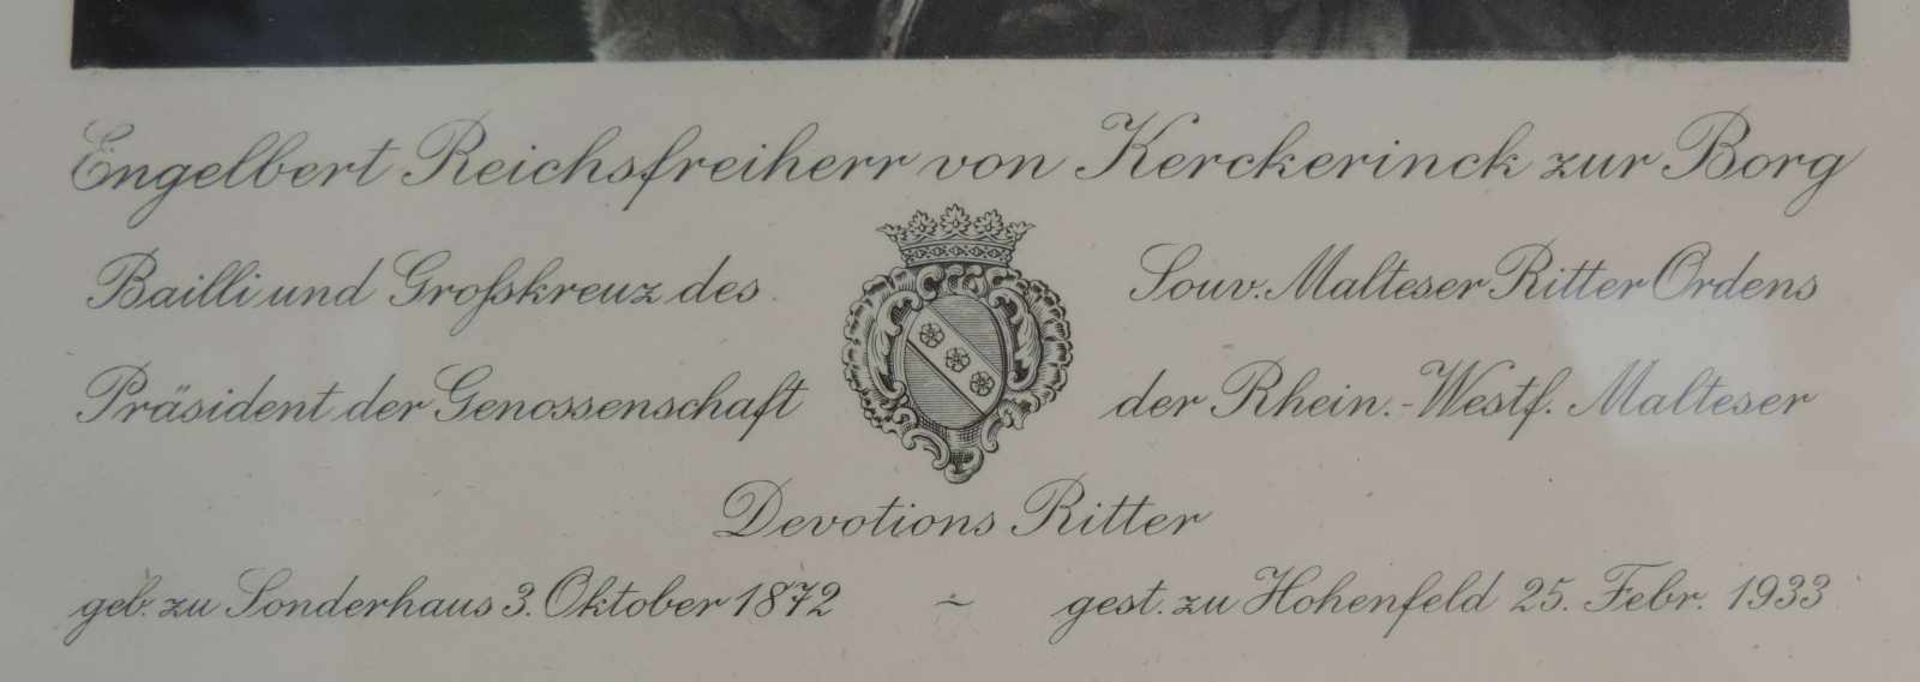 PORTRAITFOTO, Engelbert Reichsfreiherr v. Kerckerinck zur Borg, (1872-1933), in vollem Ordensschmuck - Image 2 of 2